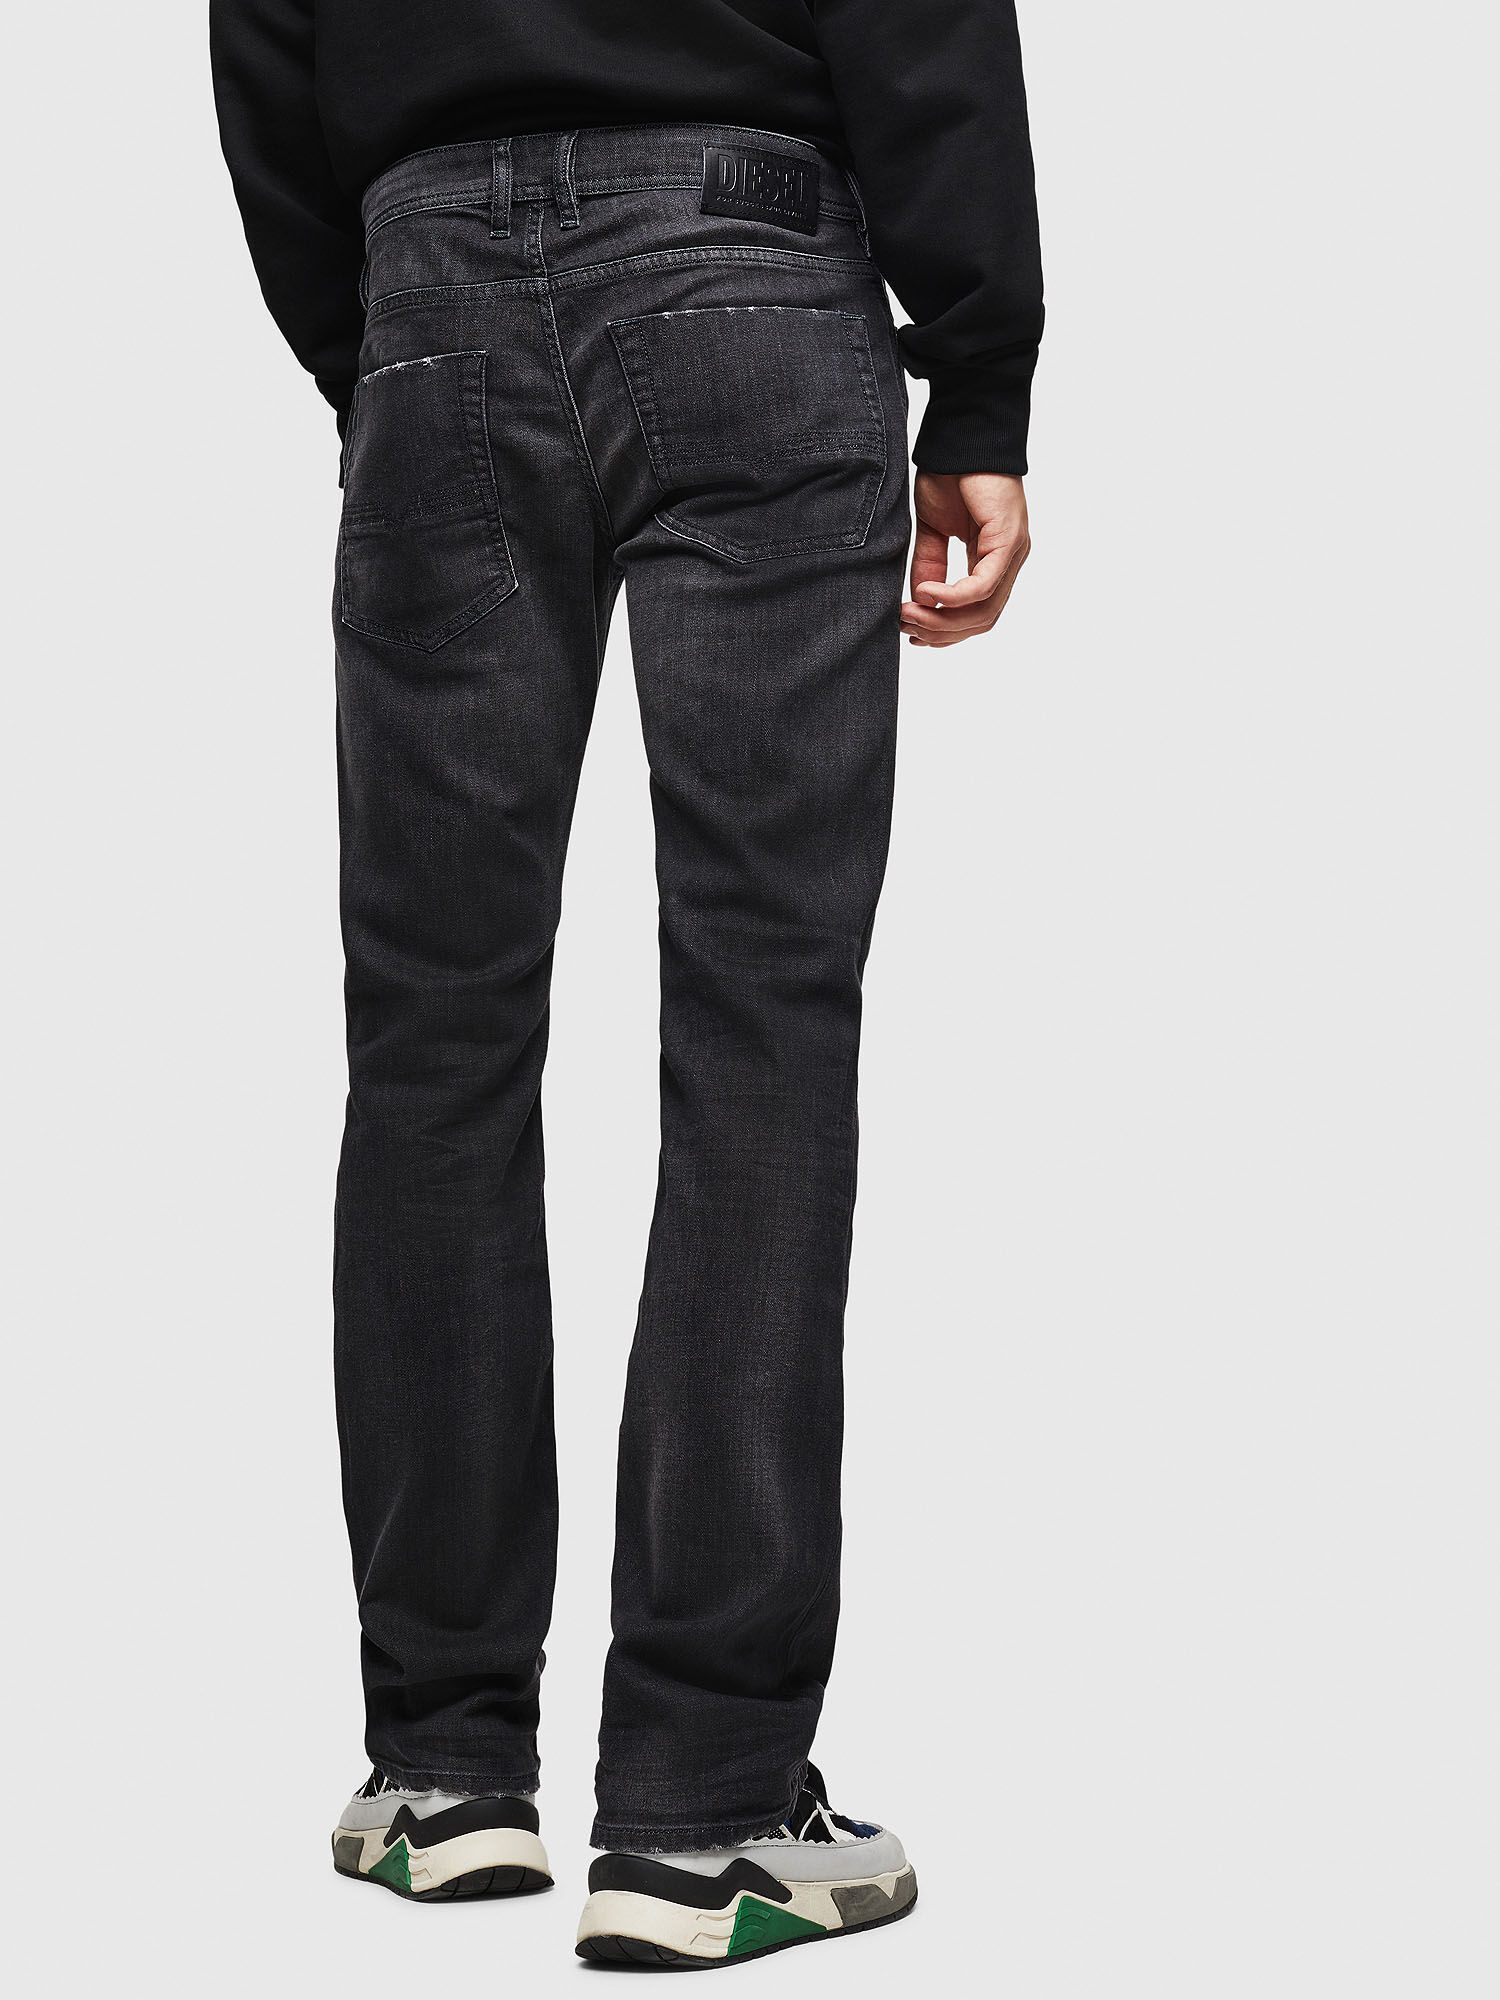 Men: Bootcut Black/Dark grey Jeans | Diesel